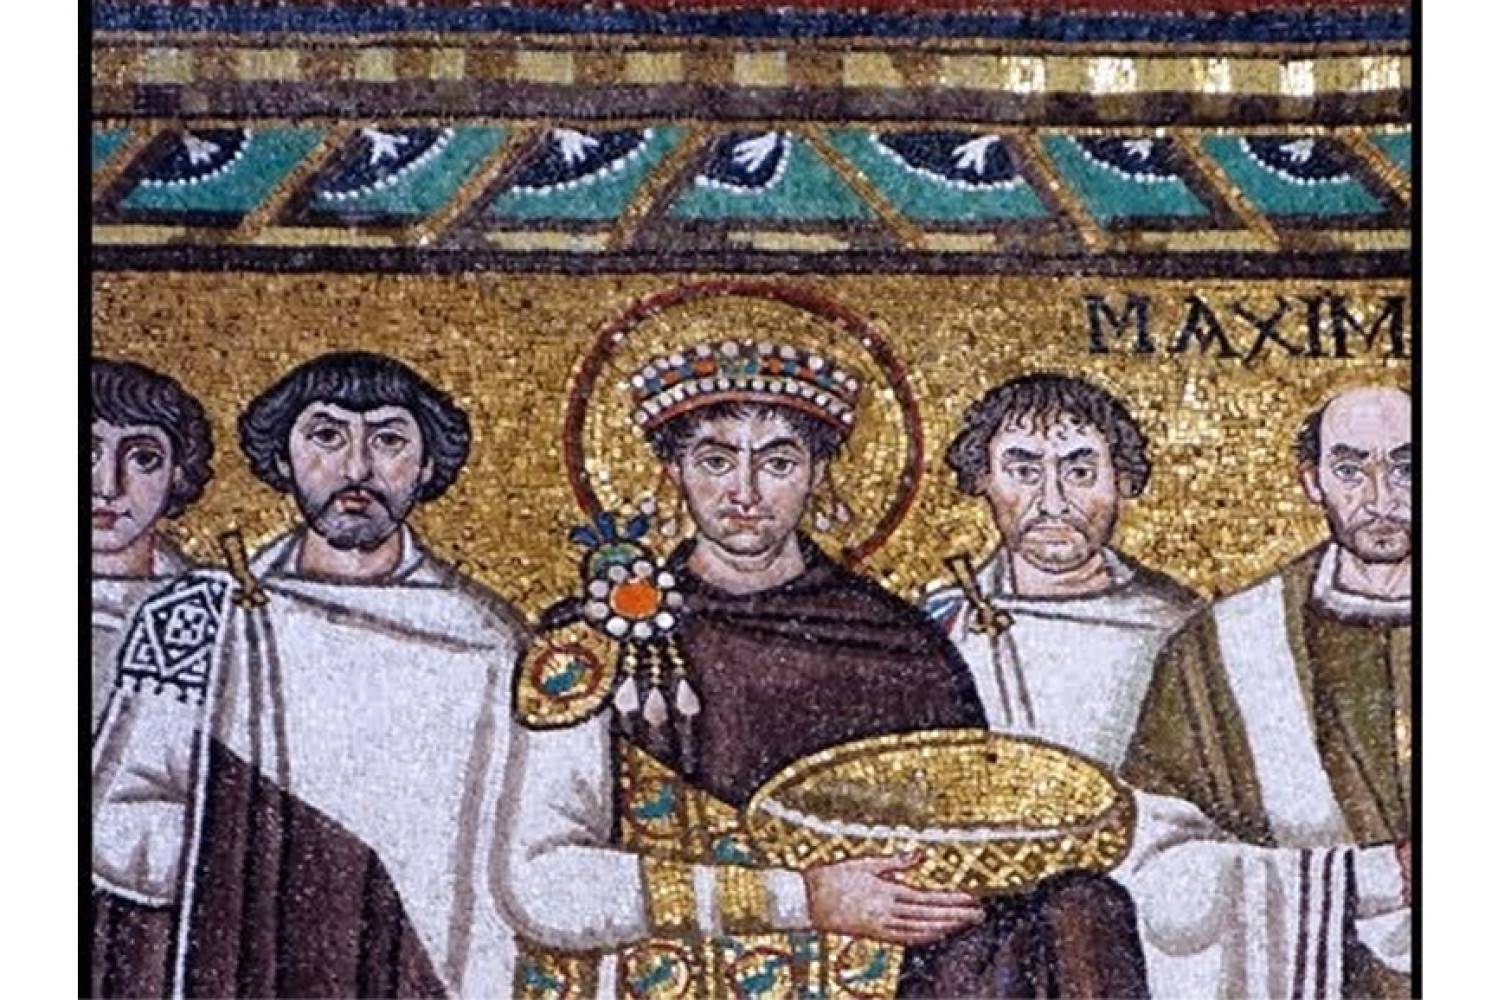 Detail of mosaic of Emperor Justinian at Ravenna, Italy.